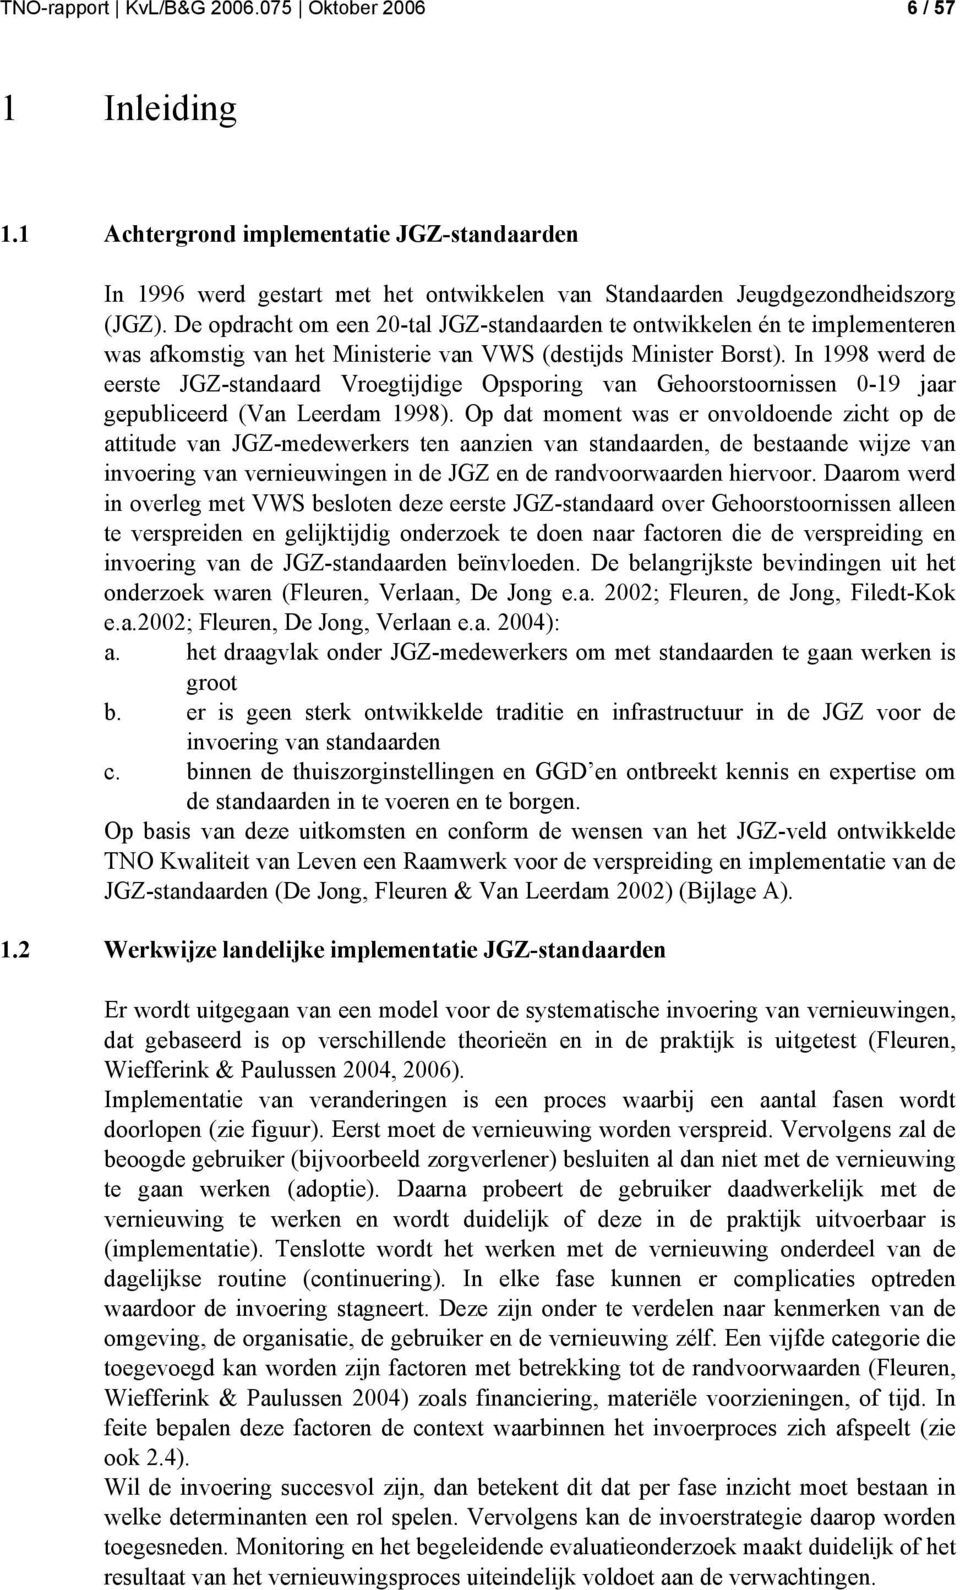 In 1998 werd de eerste JGZ-standaard Vroegtijdige Opsporing van Gehoorstoornissen 0-19 jaar gepubliceerd (Van Leerdam 1998).